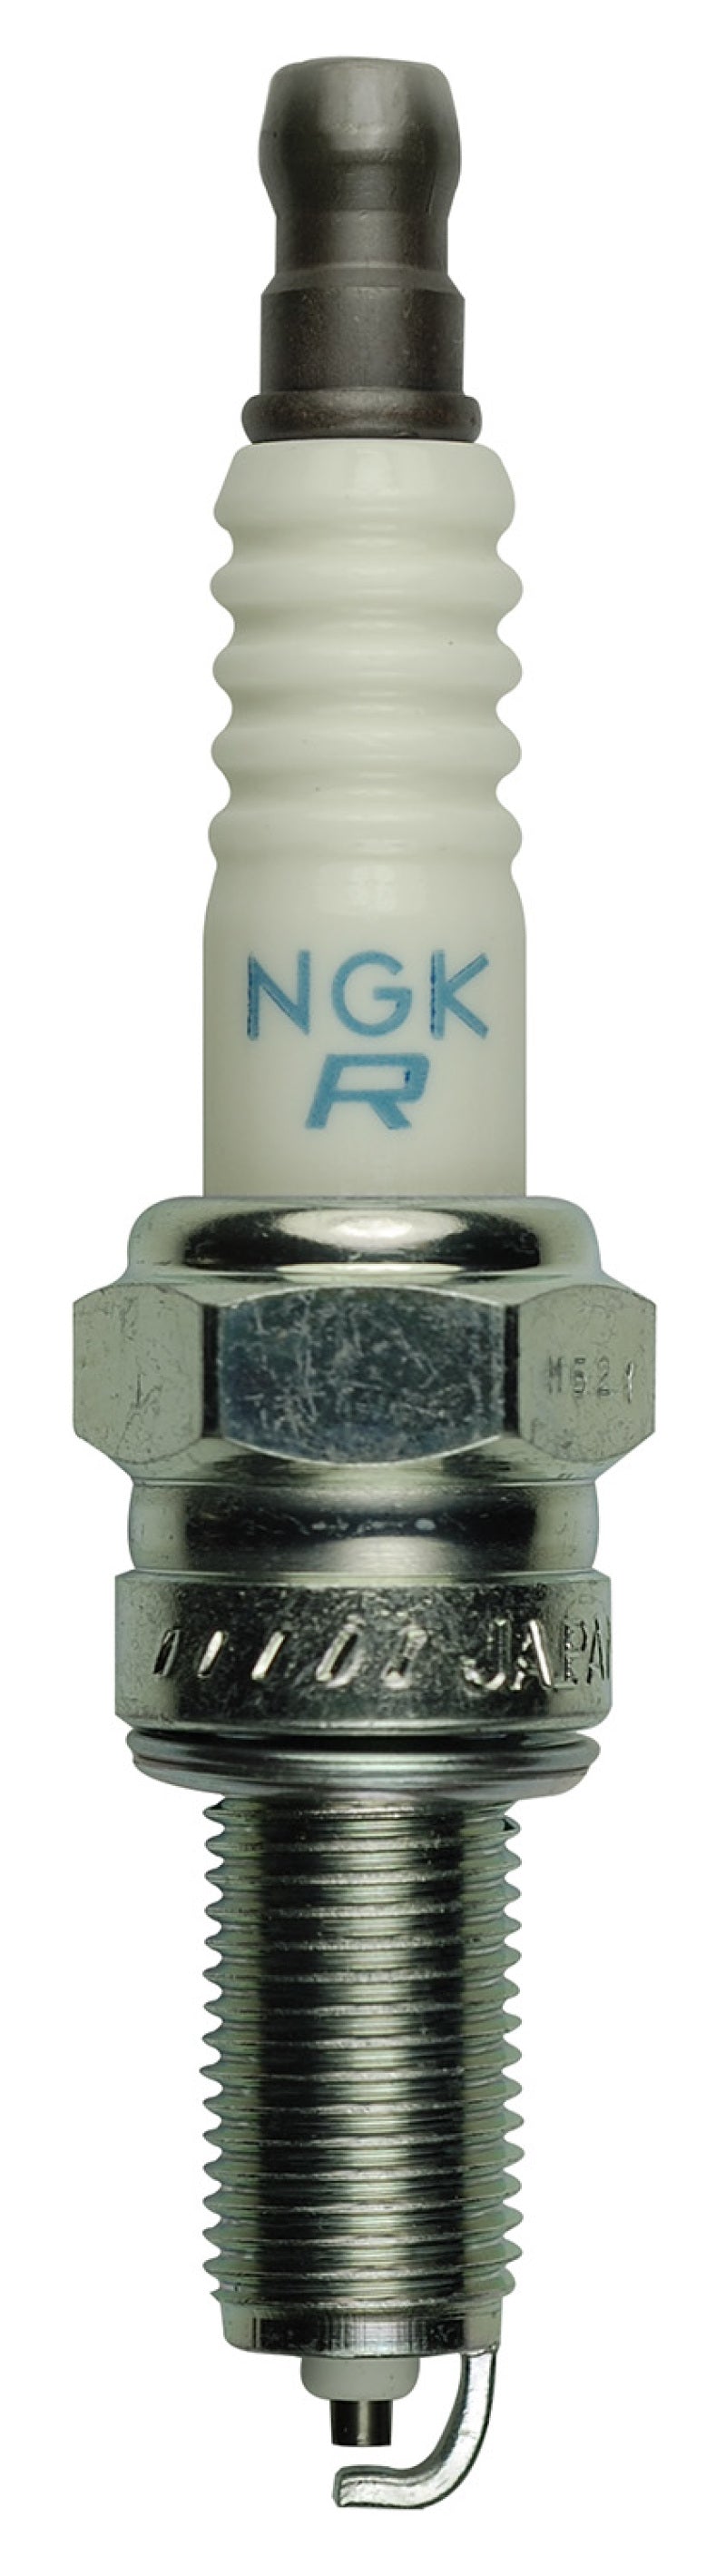 NGK Copper Core Spark Plug Box of 4 (MR7F)